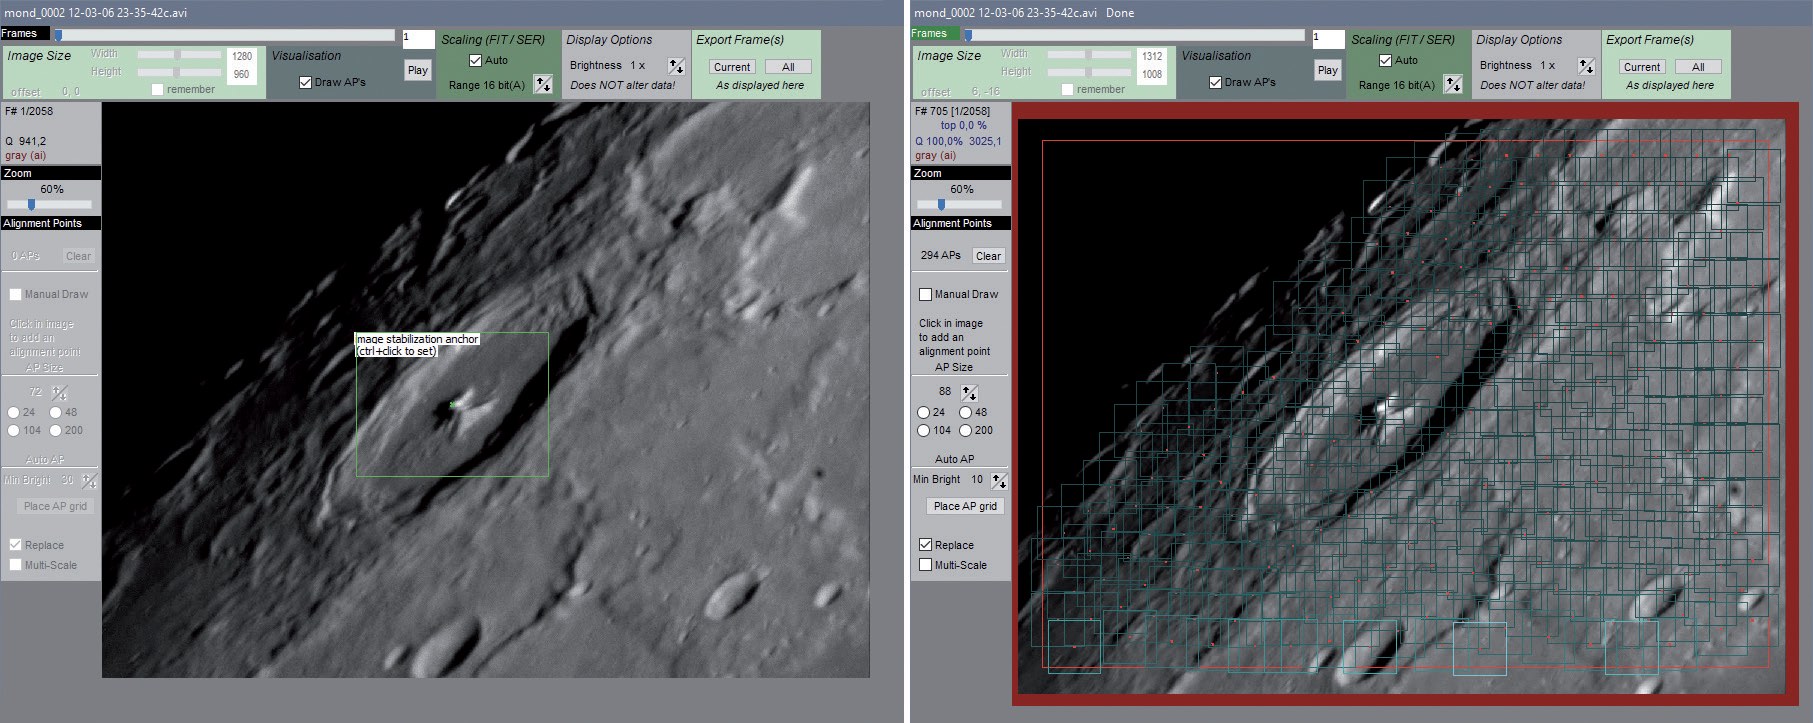 Fereastra imaginii cu punctul de stabilizare pe muntele central Pitagora în stânga și grila de puncte de aliniere în dreapta. M. Weigand